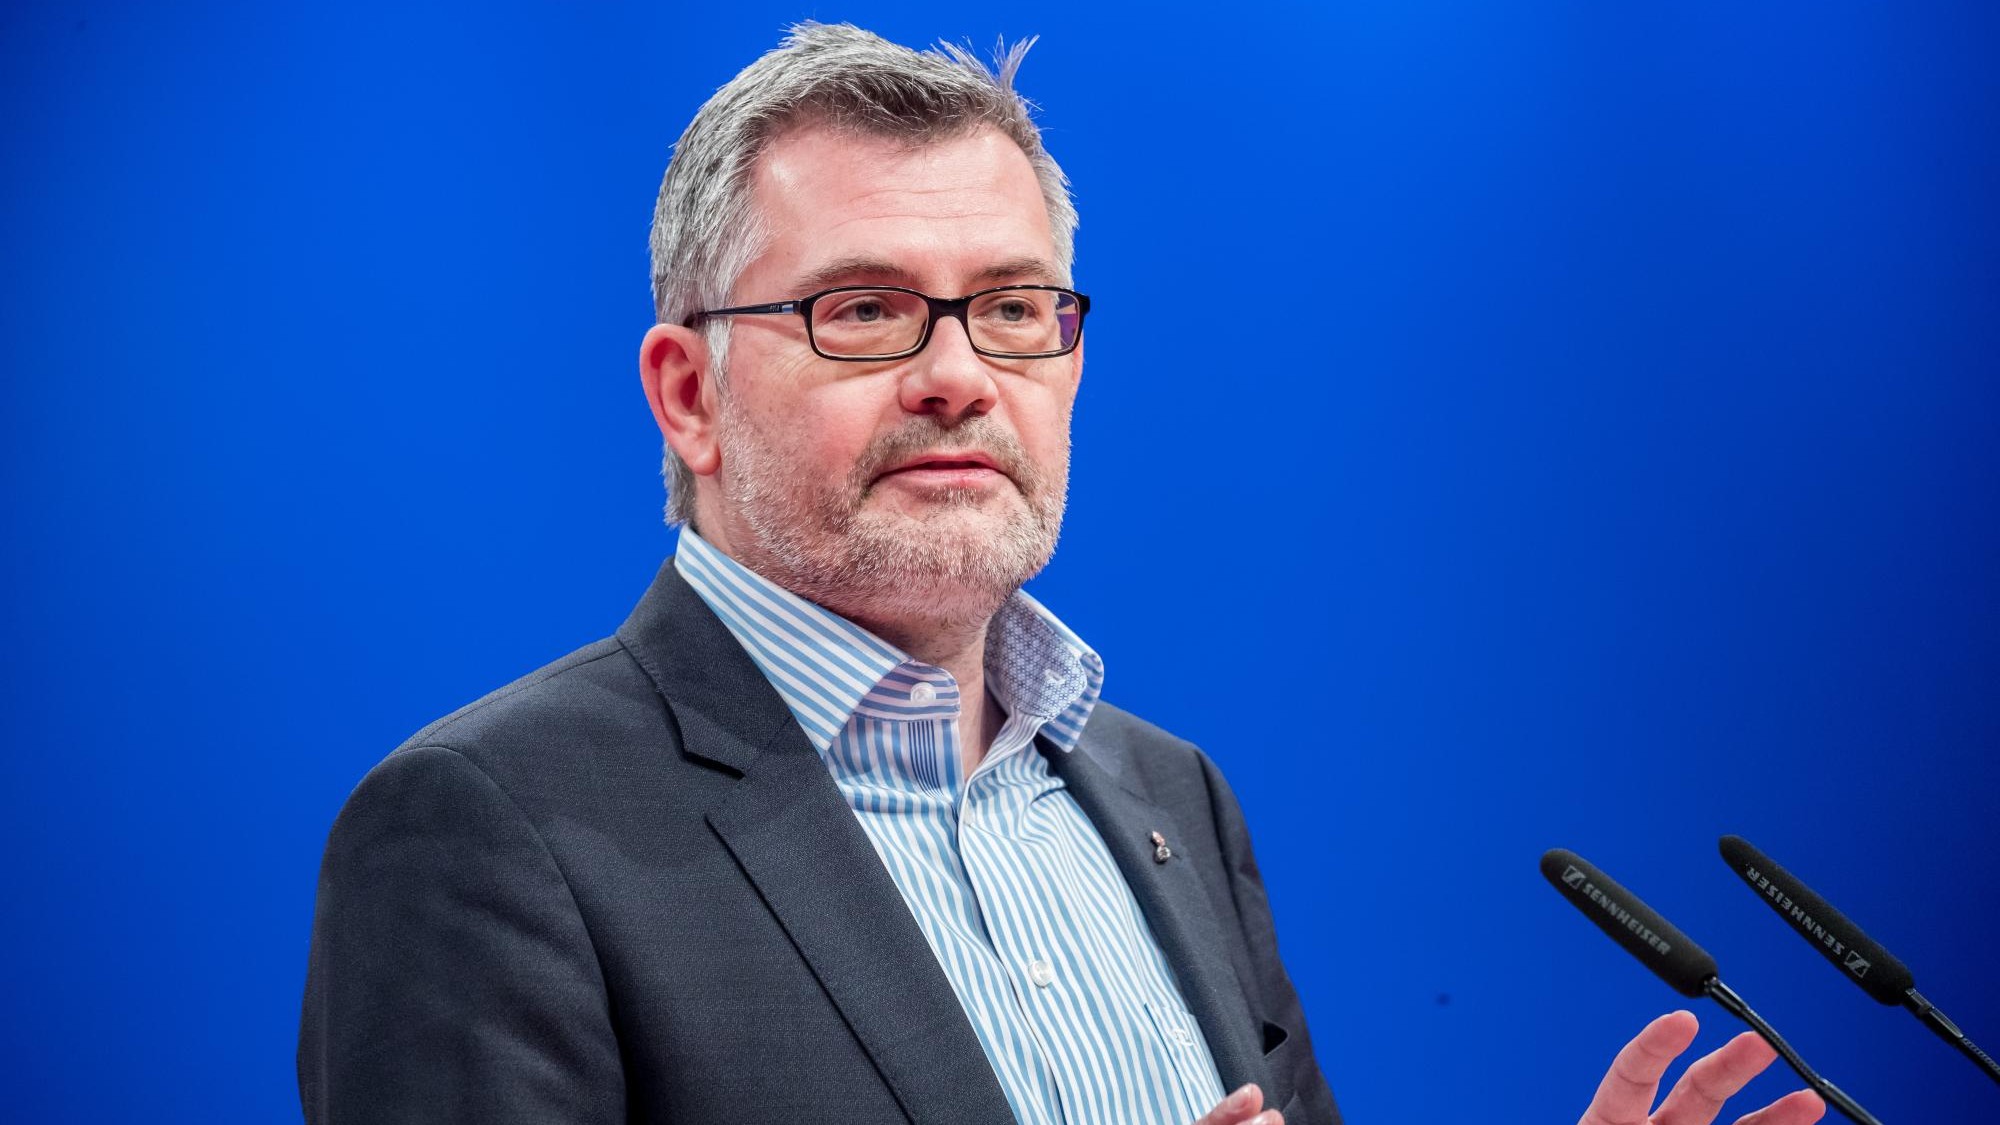 Nach BGH-Urteil - SPD will mit anderen Fraktionen Parteienfinanzierung neu regeln